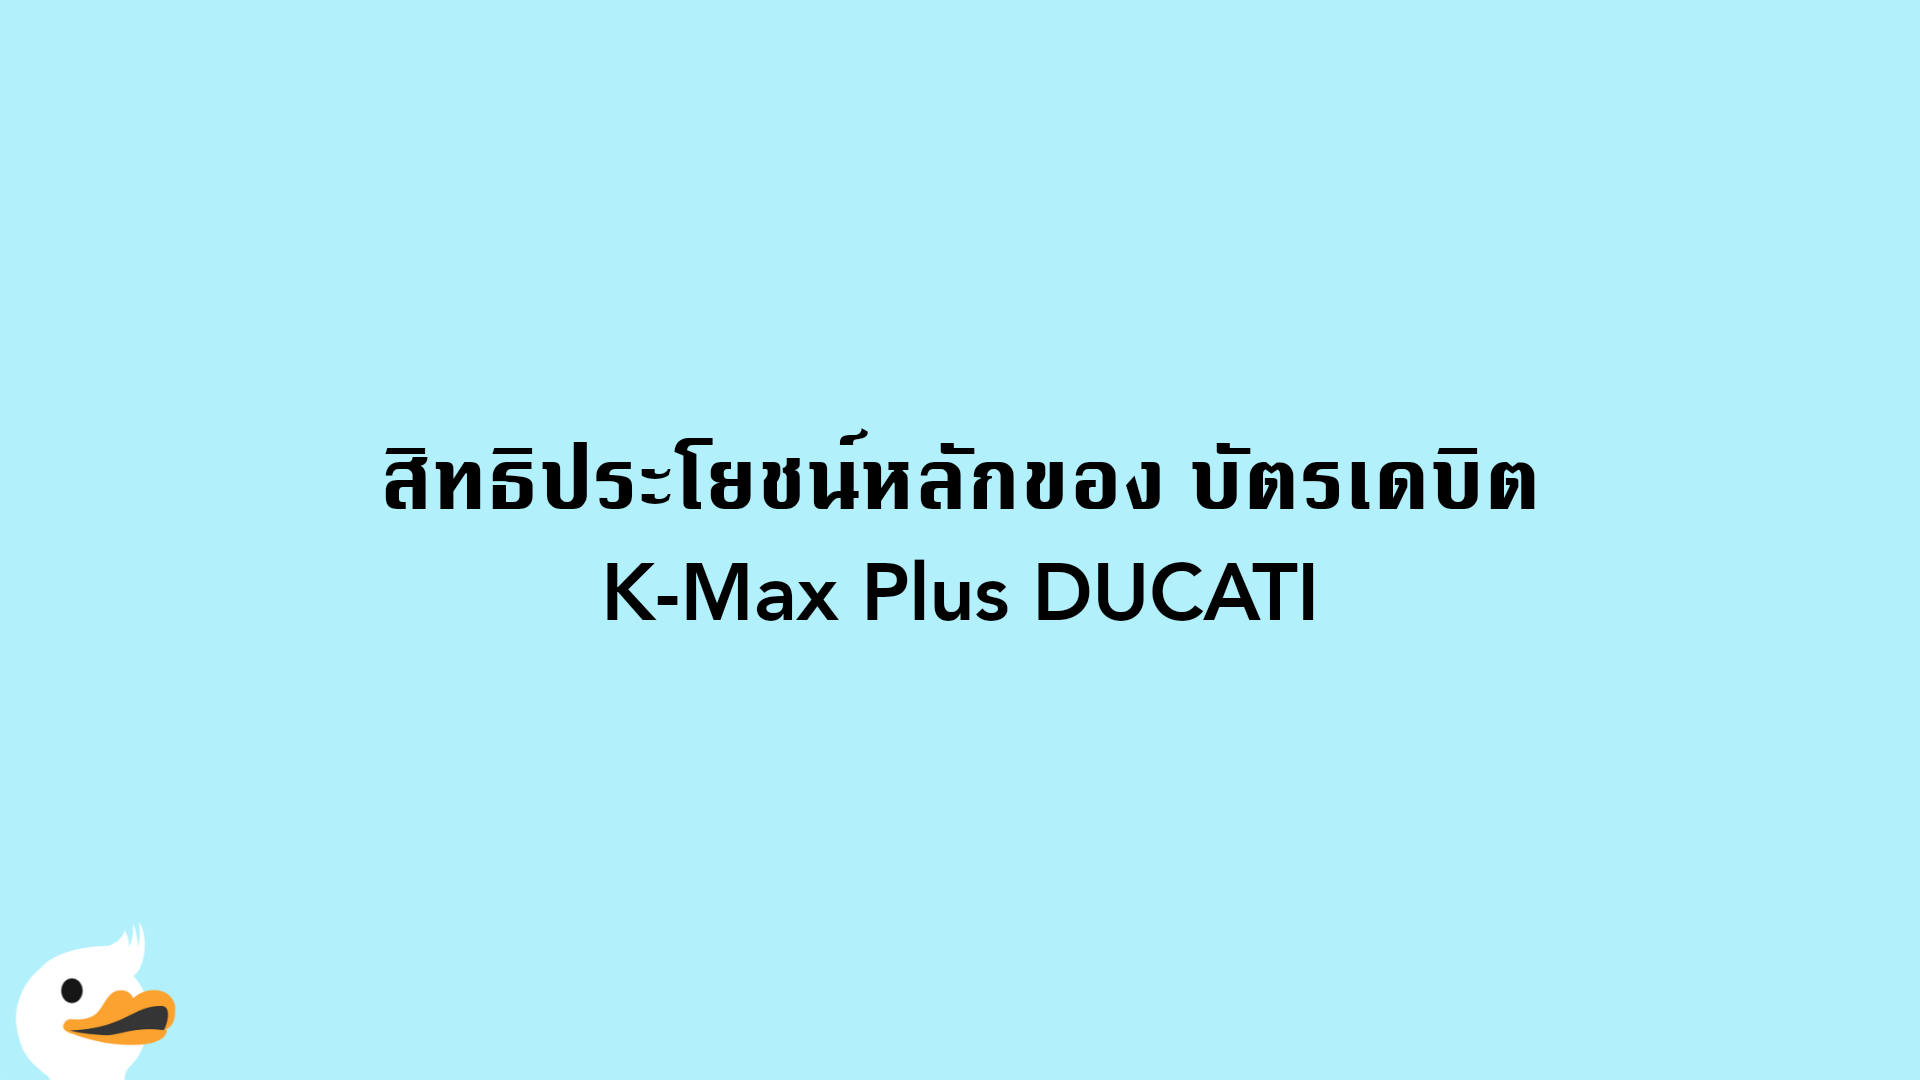 สิทธิประโยชน์หลักของ บัตรเดบิต K-Max Plus DUCATI